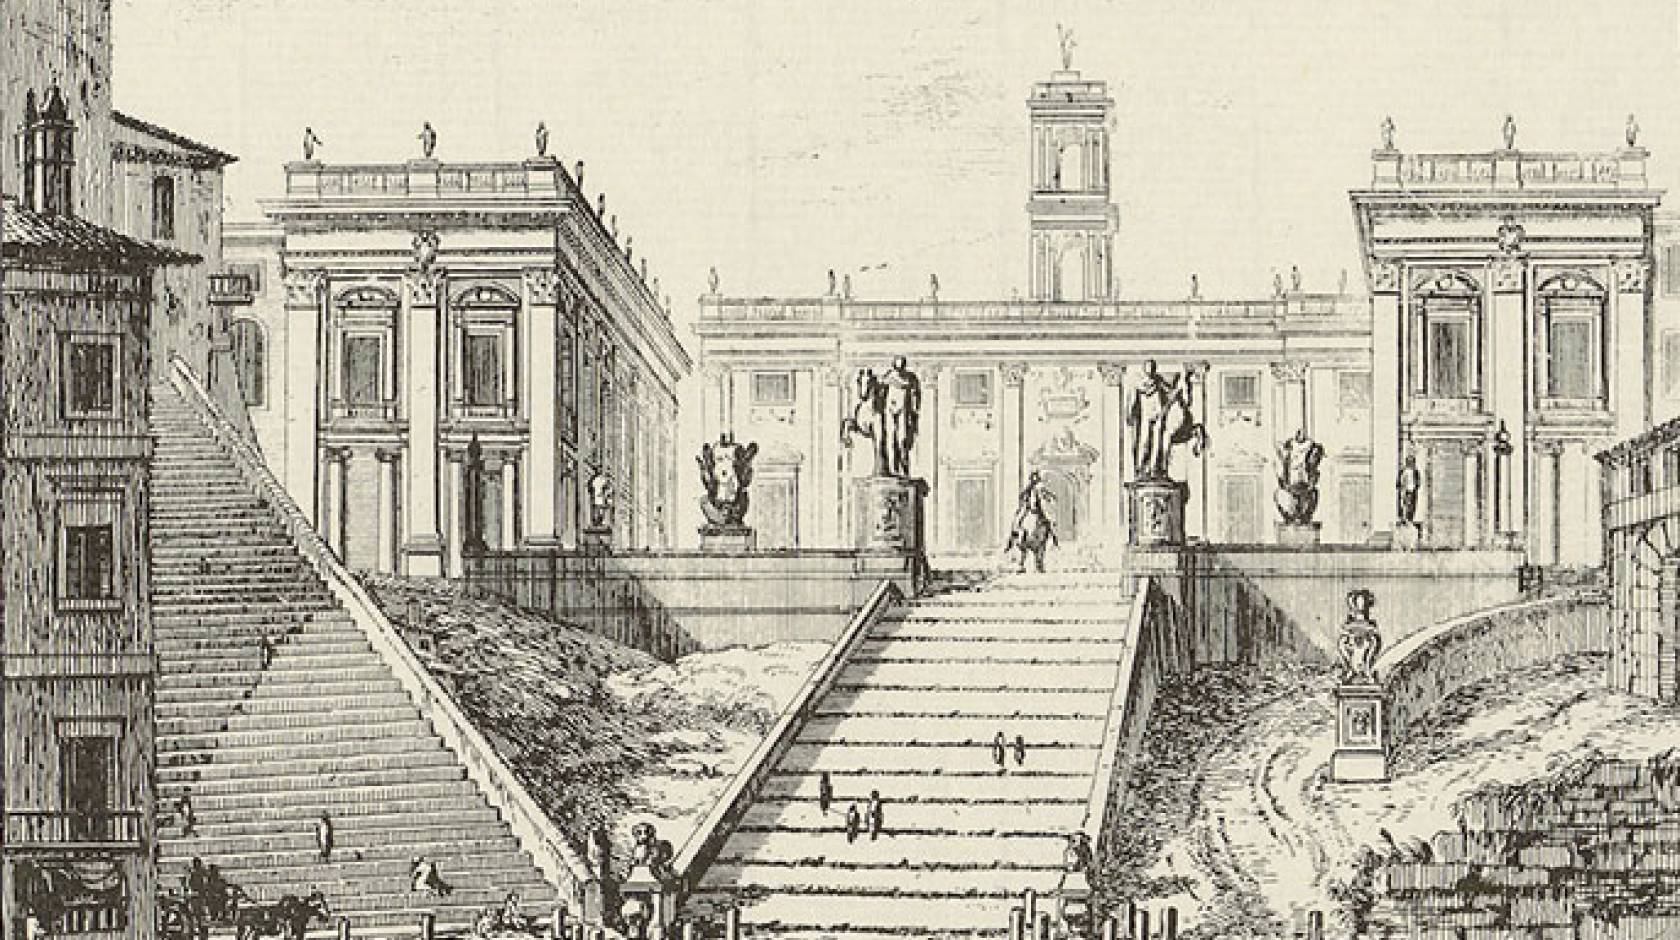 View of the Campidoglio (Capitoline Hill)